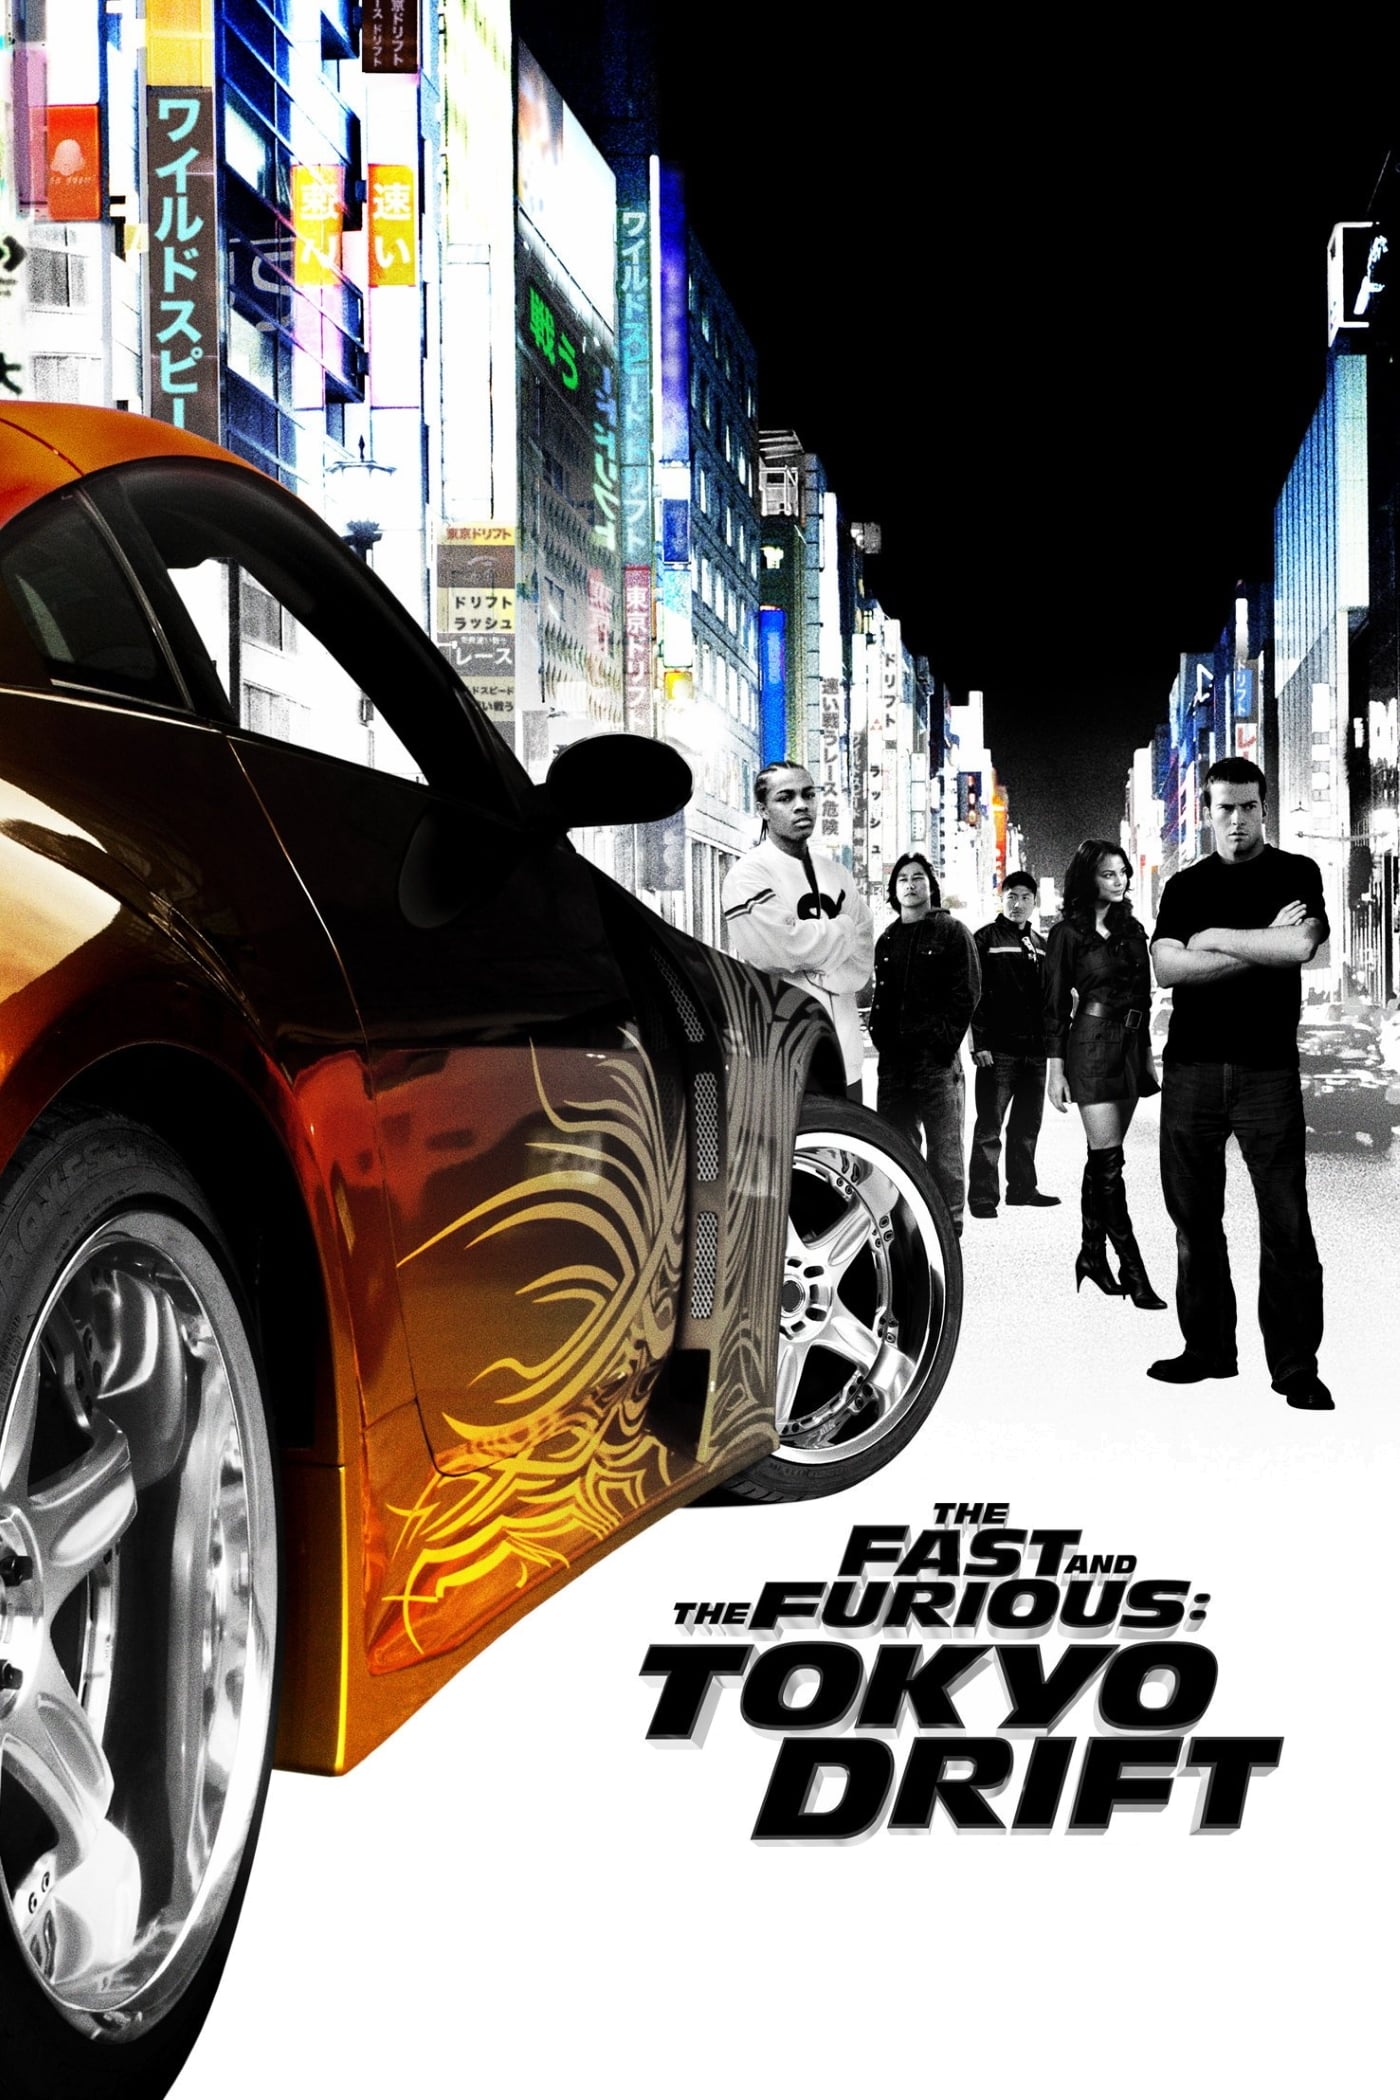 A todo gas: Tokyo Race